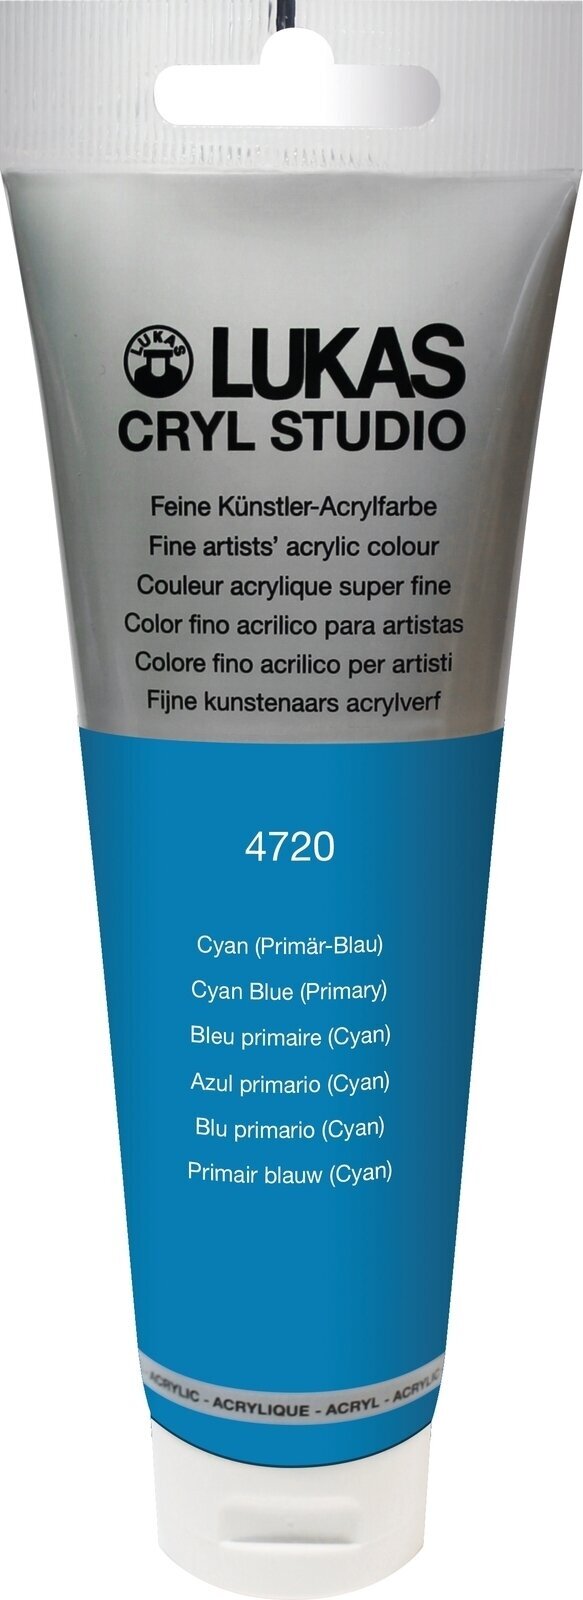 Akrylová barva Lukas Cryl Studio Akrylová barva 125 ml Cyan Blue (Primary)